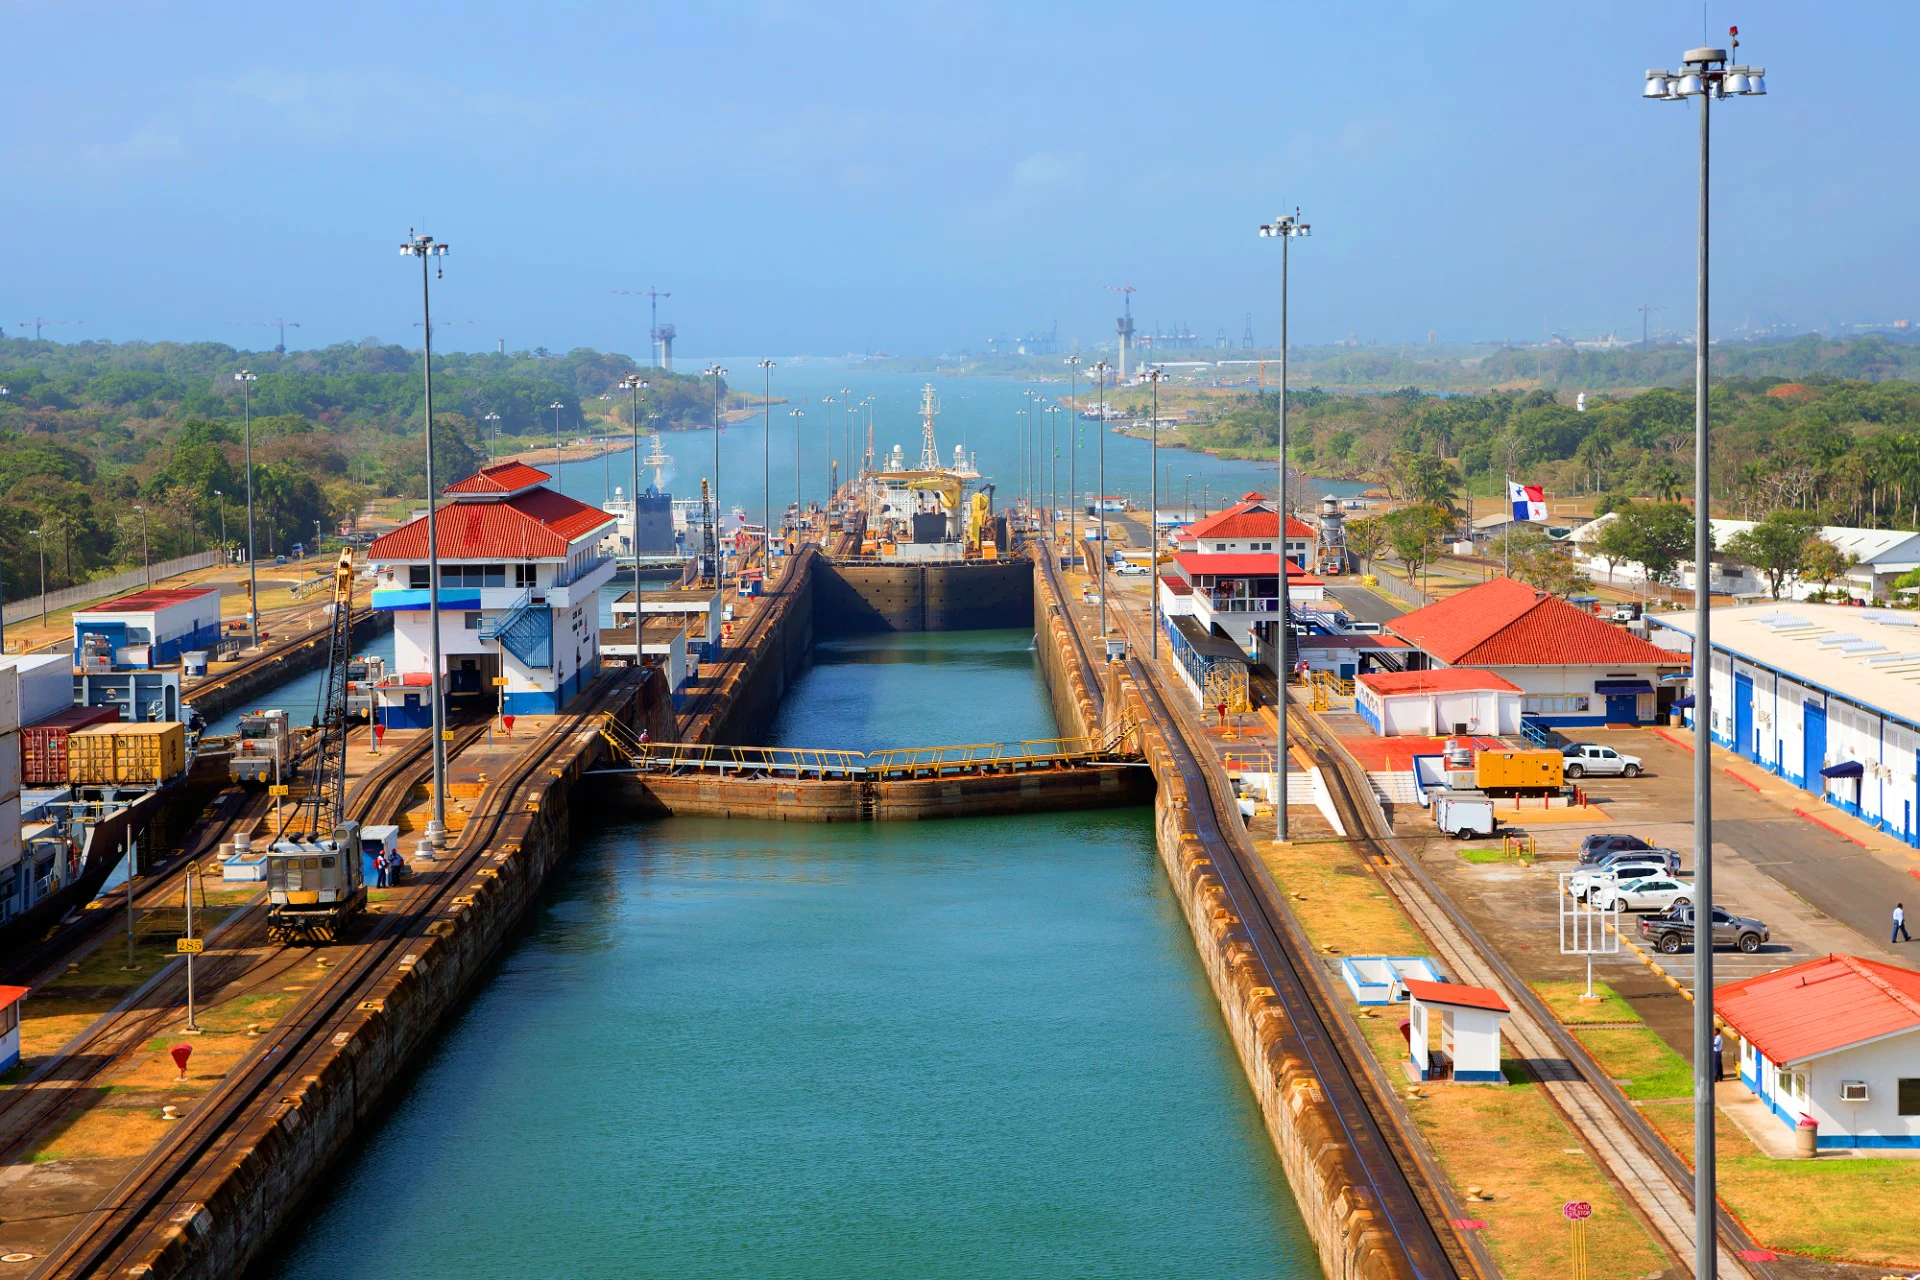 Kênh đào Panama là tuyến đường thủy nhân tạo nối Đại Tây Dương và Thái Bình Dương ở Panama, Trung Mỹ. Việc xây dựng Kênh bắt đầu vào năm 1904 và mất mười năm để hoàn thành, bao gồm việc đào hàng triệu mét khối đất đá và lắp đặt một hệ thống đường thủy và kênh phức tạp.  Kênh đào kéo dài khoảng 80 km qua eo đất Panama và tạo điều kiện thuận lợi cho việc vận chuyển hàng hóa và con người giữa hai đại dương. Kênh đào Panama được coi là một trong bảy kỳ quan của thế giới hiện đại và đã tác động đáng kể đến thương mại và vận tải toàn cầu.